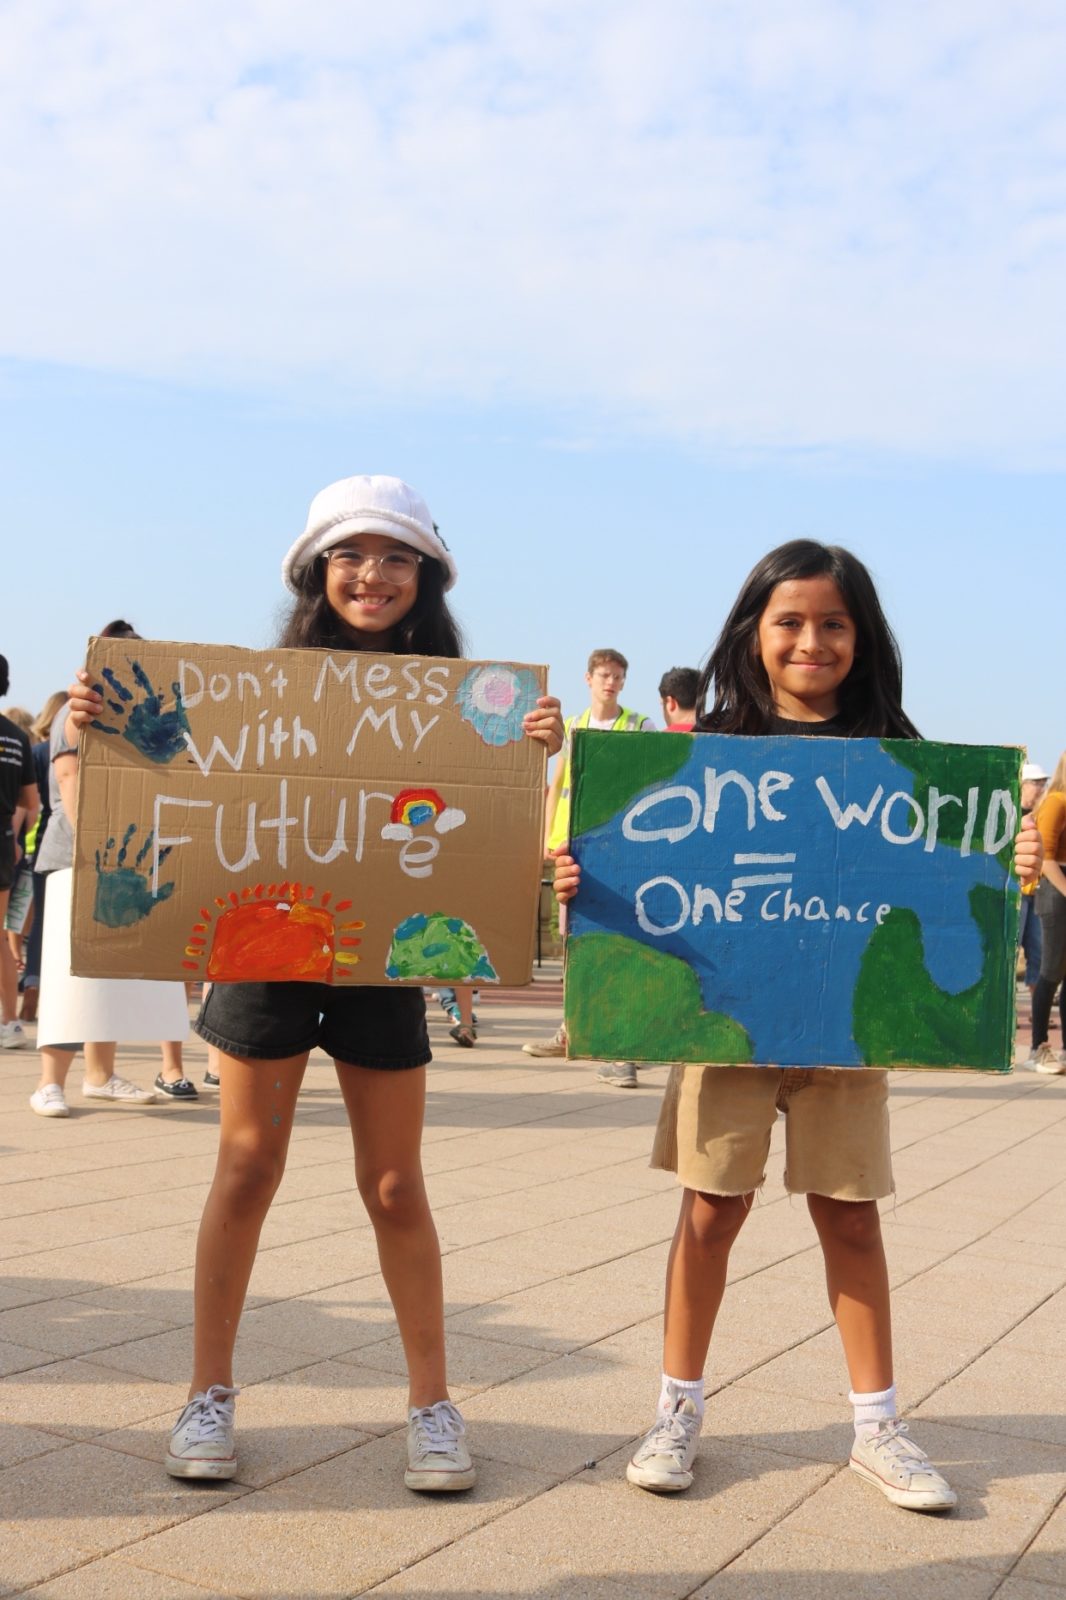 ناشطان شابان يحملان لافتات كتب عليها "لا تعبث بمستقبلي" و "عالم واحد ، فرصة واحدة" خلال إضراب المناخ في سبتمبر 2019.